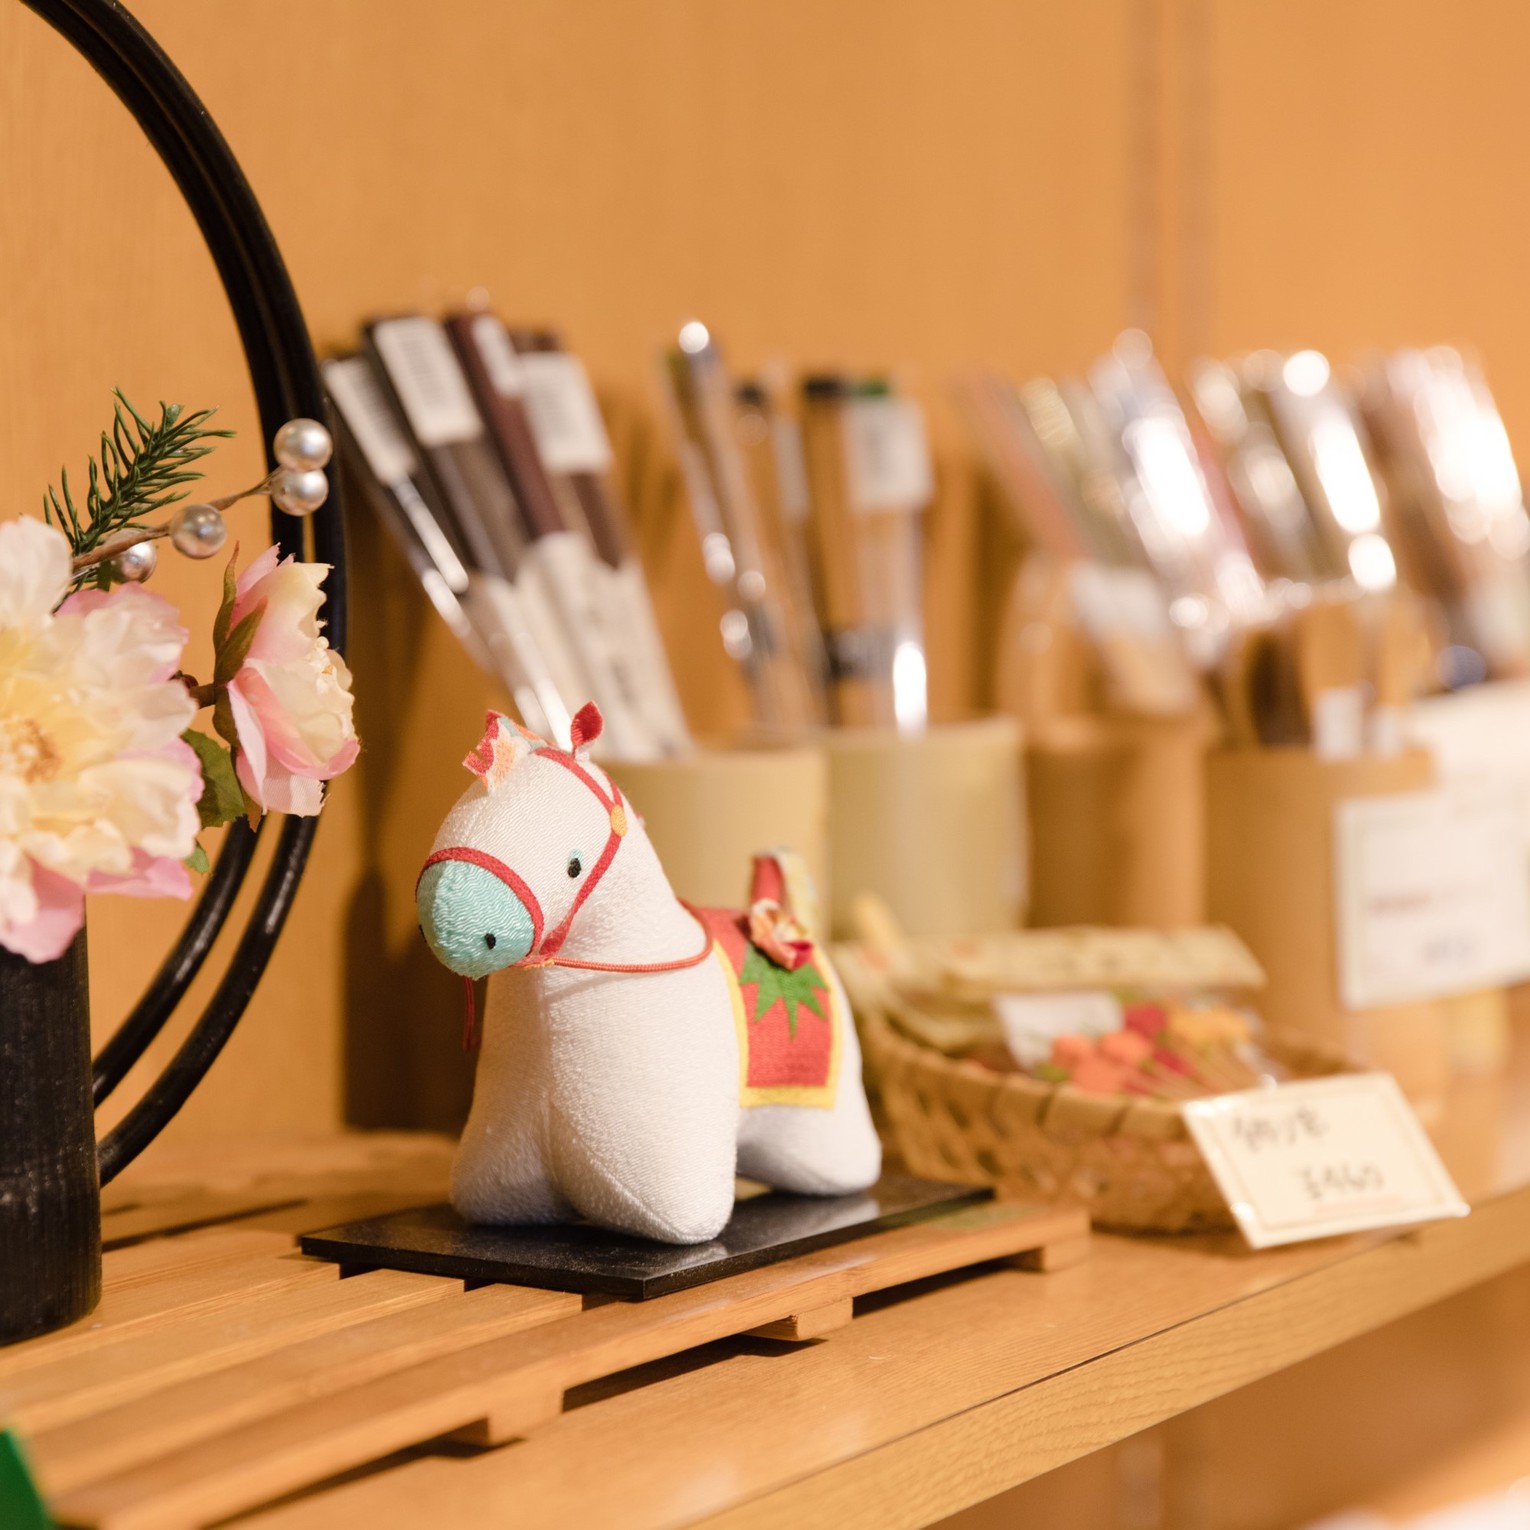 【お土産売り場】京都ならではのお土産はもちろん、ちょっとしたかわいい小物まで取り揃えております。